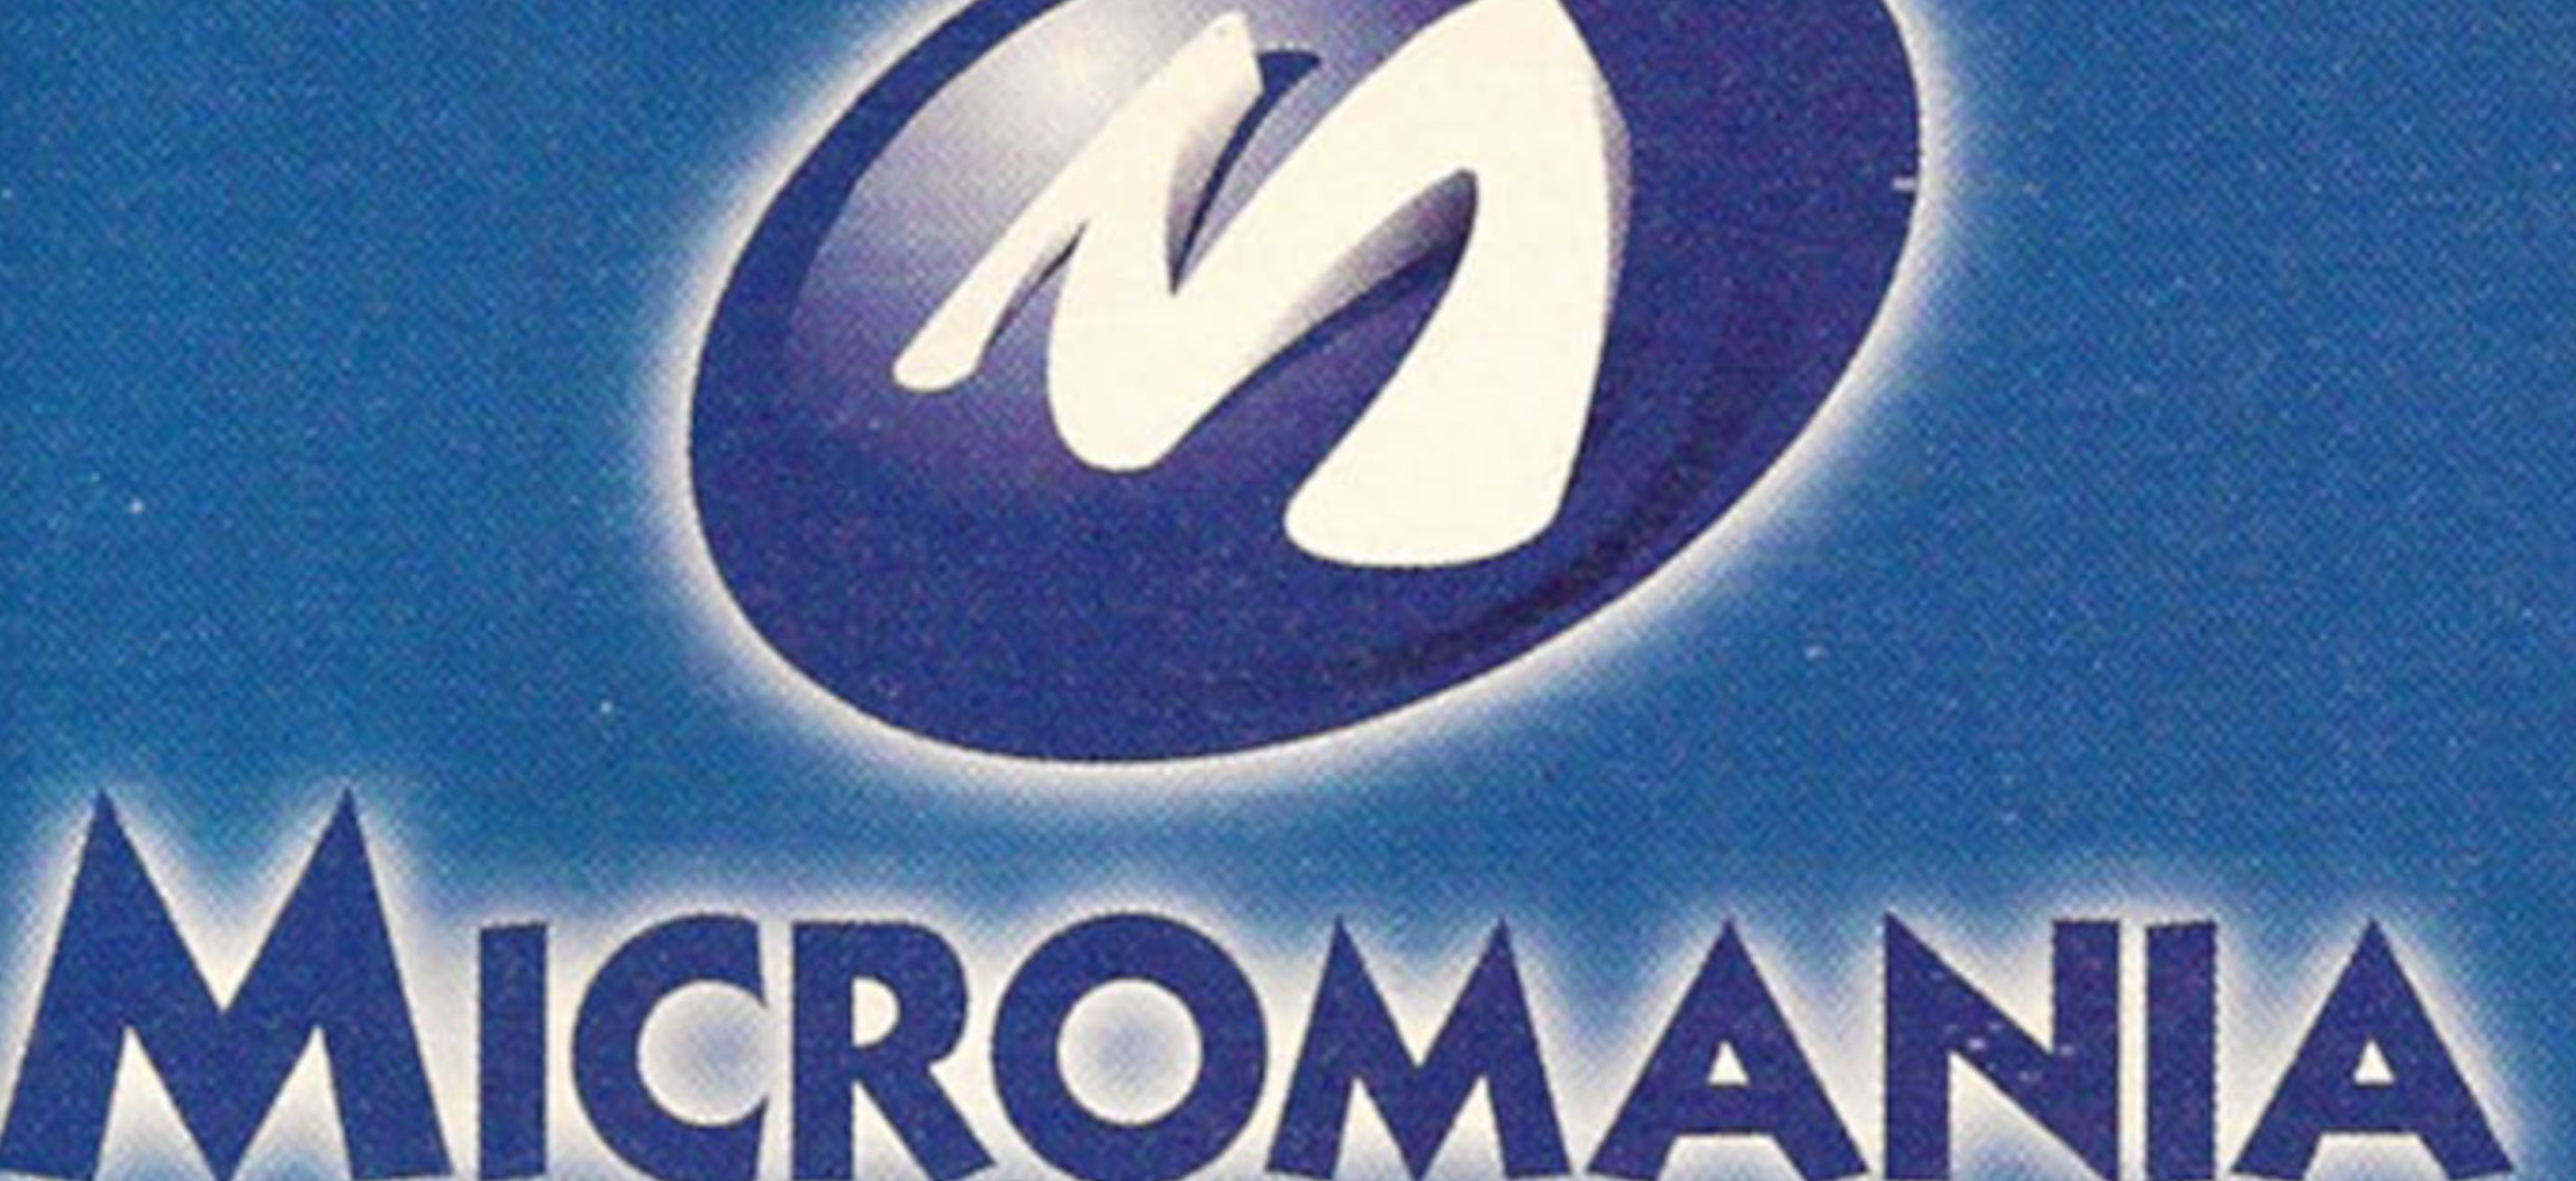 1993 - 2003 : Retour sur la deuxième décennie de Micromania